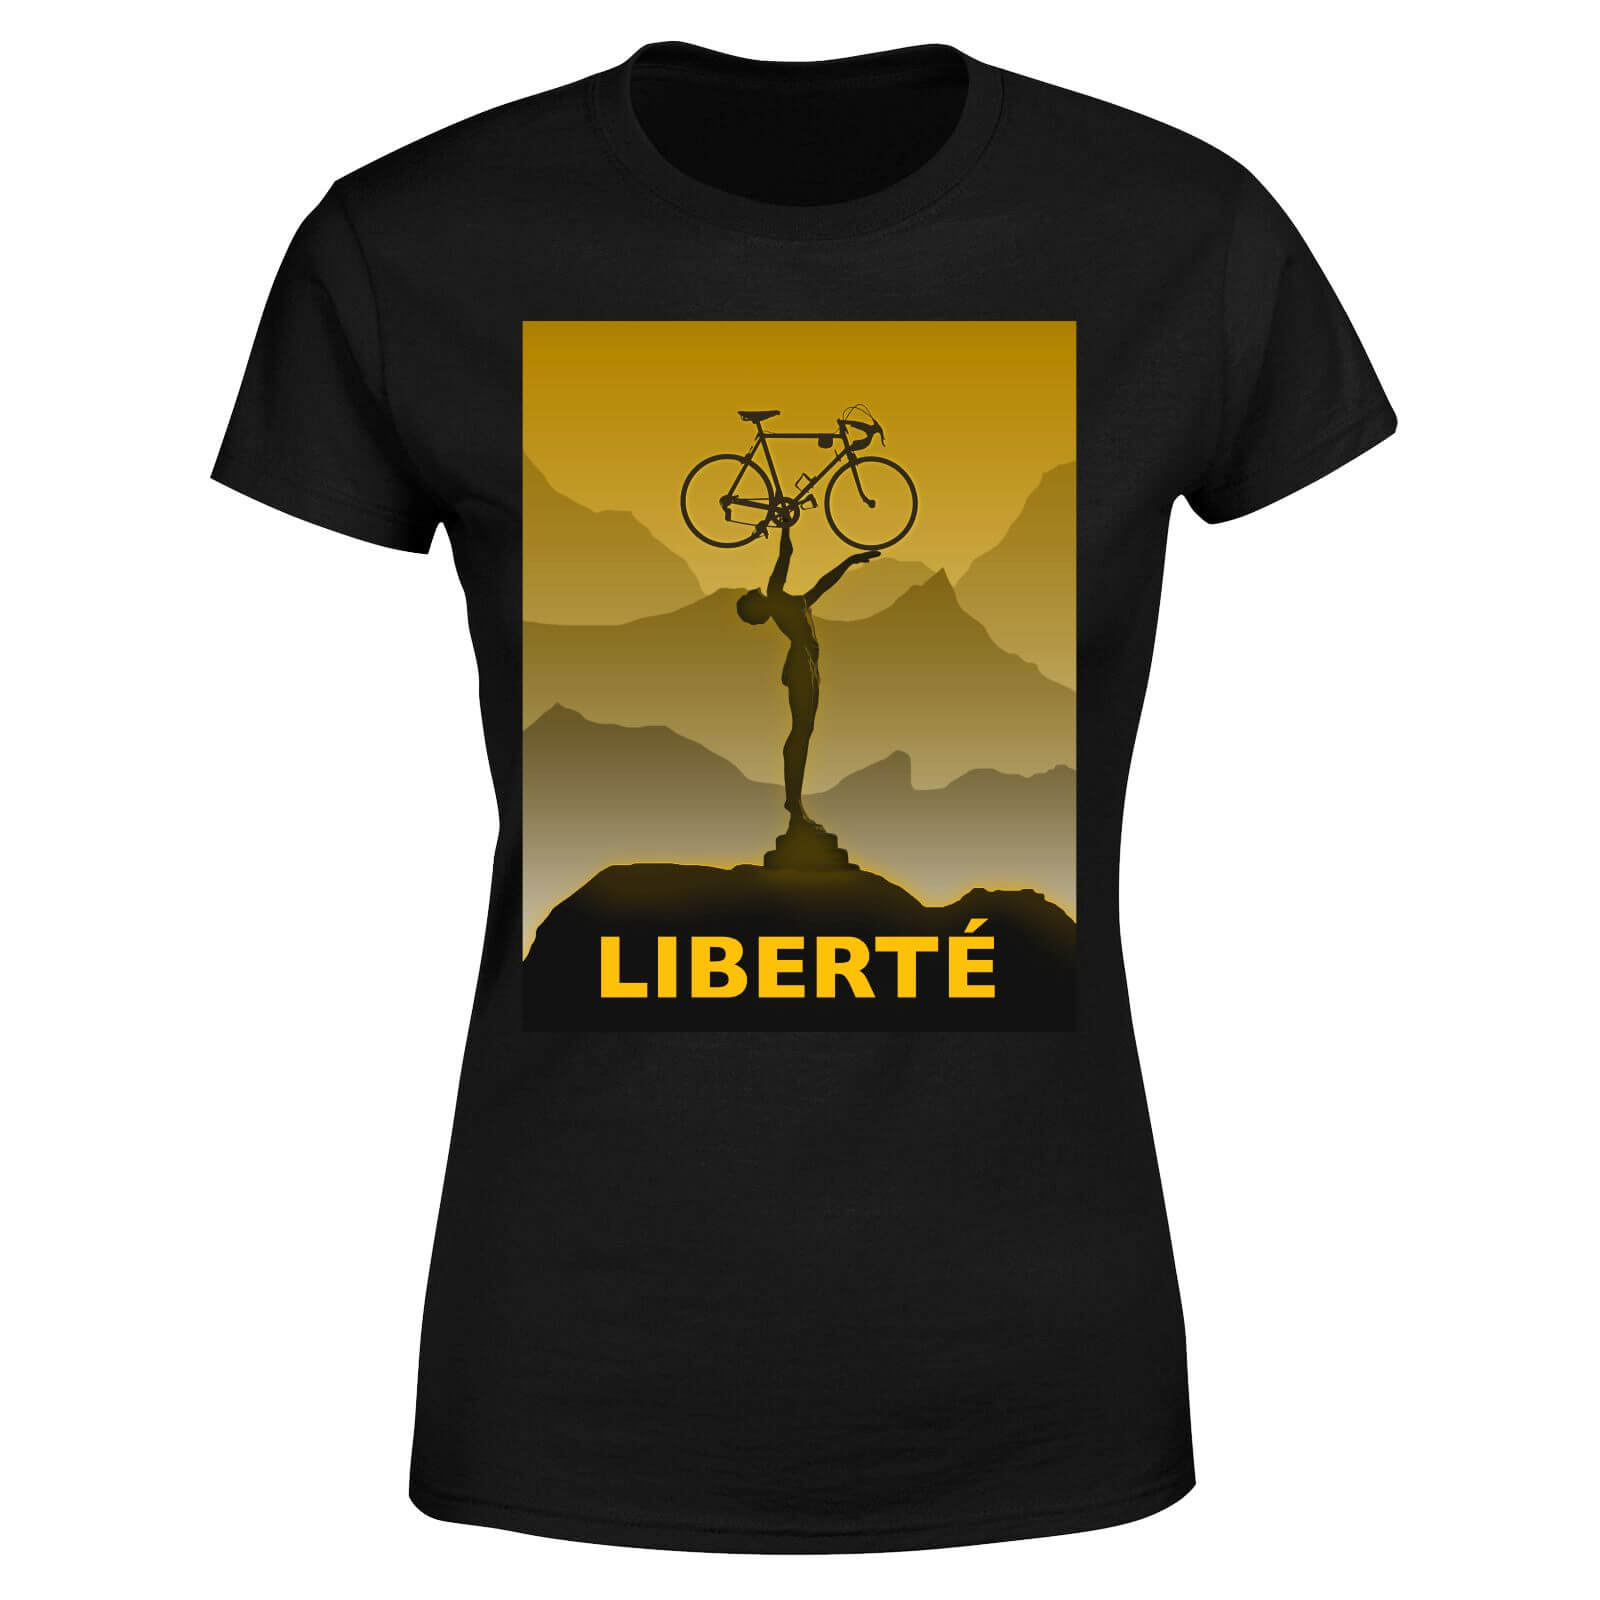 Liberte Women's T-Shirt - Black - M - Black